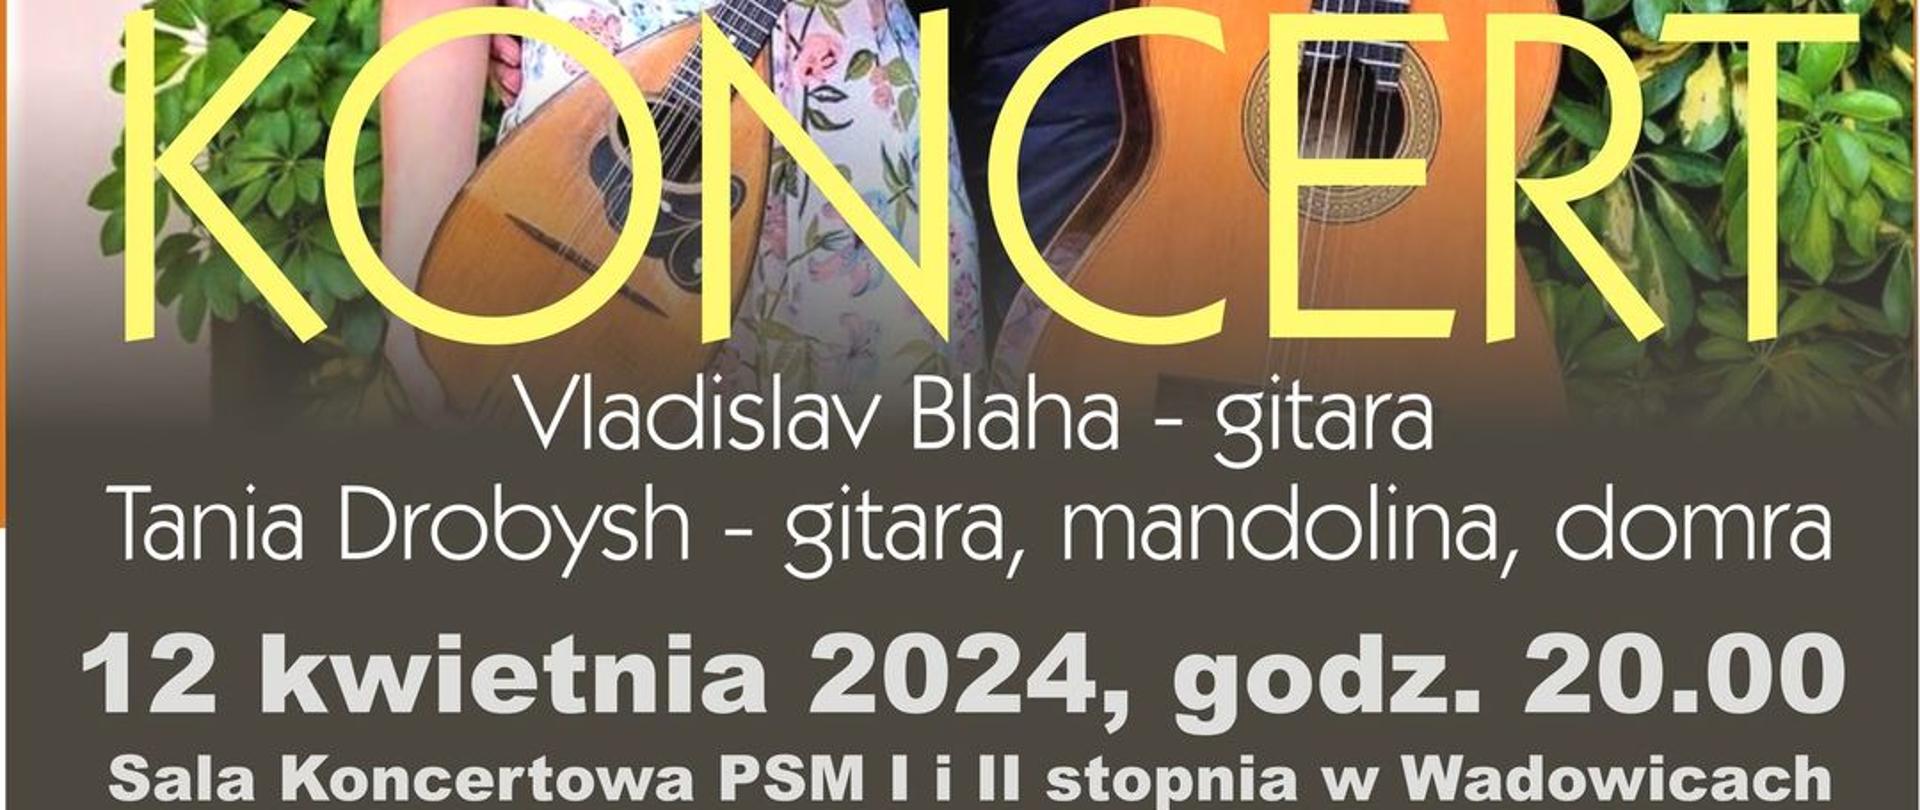 Koncert Gitarowy Vladislav Blaha (gitara) i Tania Drobysh (gitara, mandolina, domra) 12.04.2024 o godzinie 20:00 W sali Koncertowej PSM Wadowice. Wstęp wolny